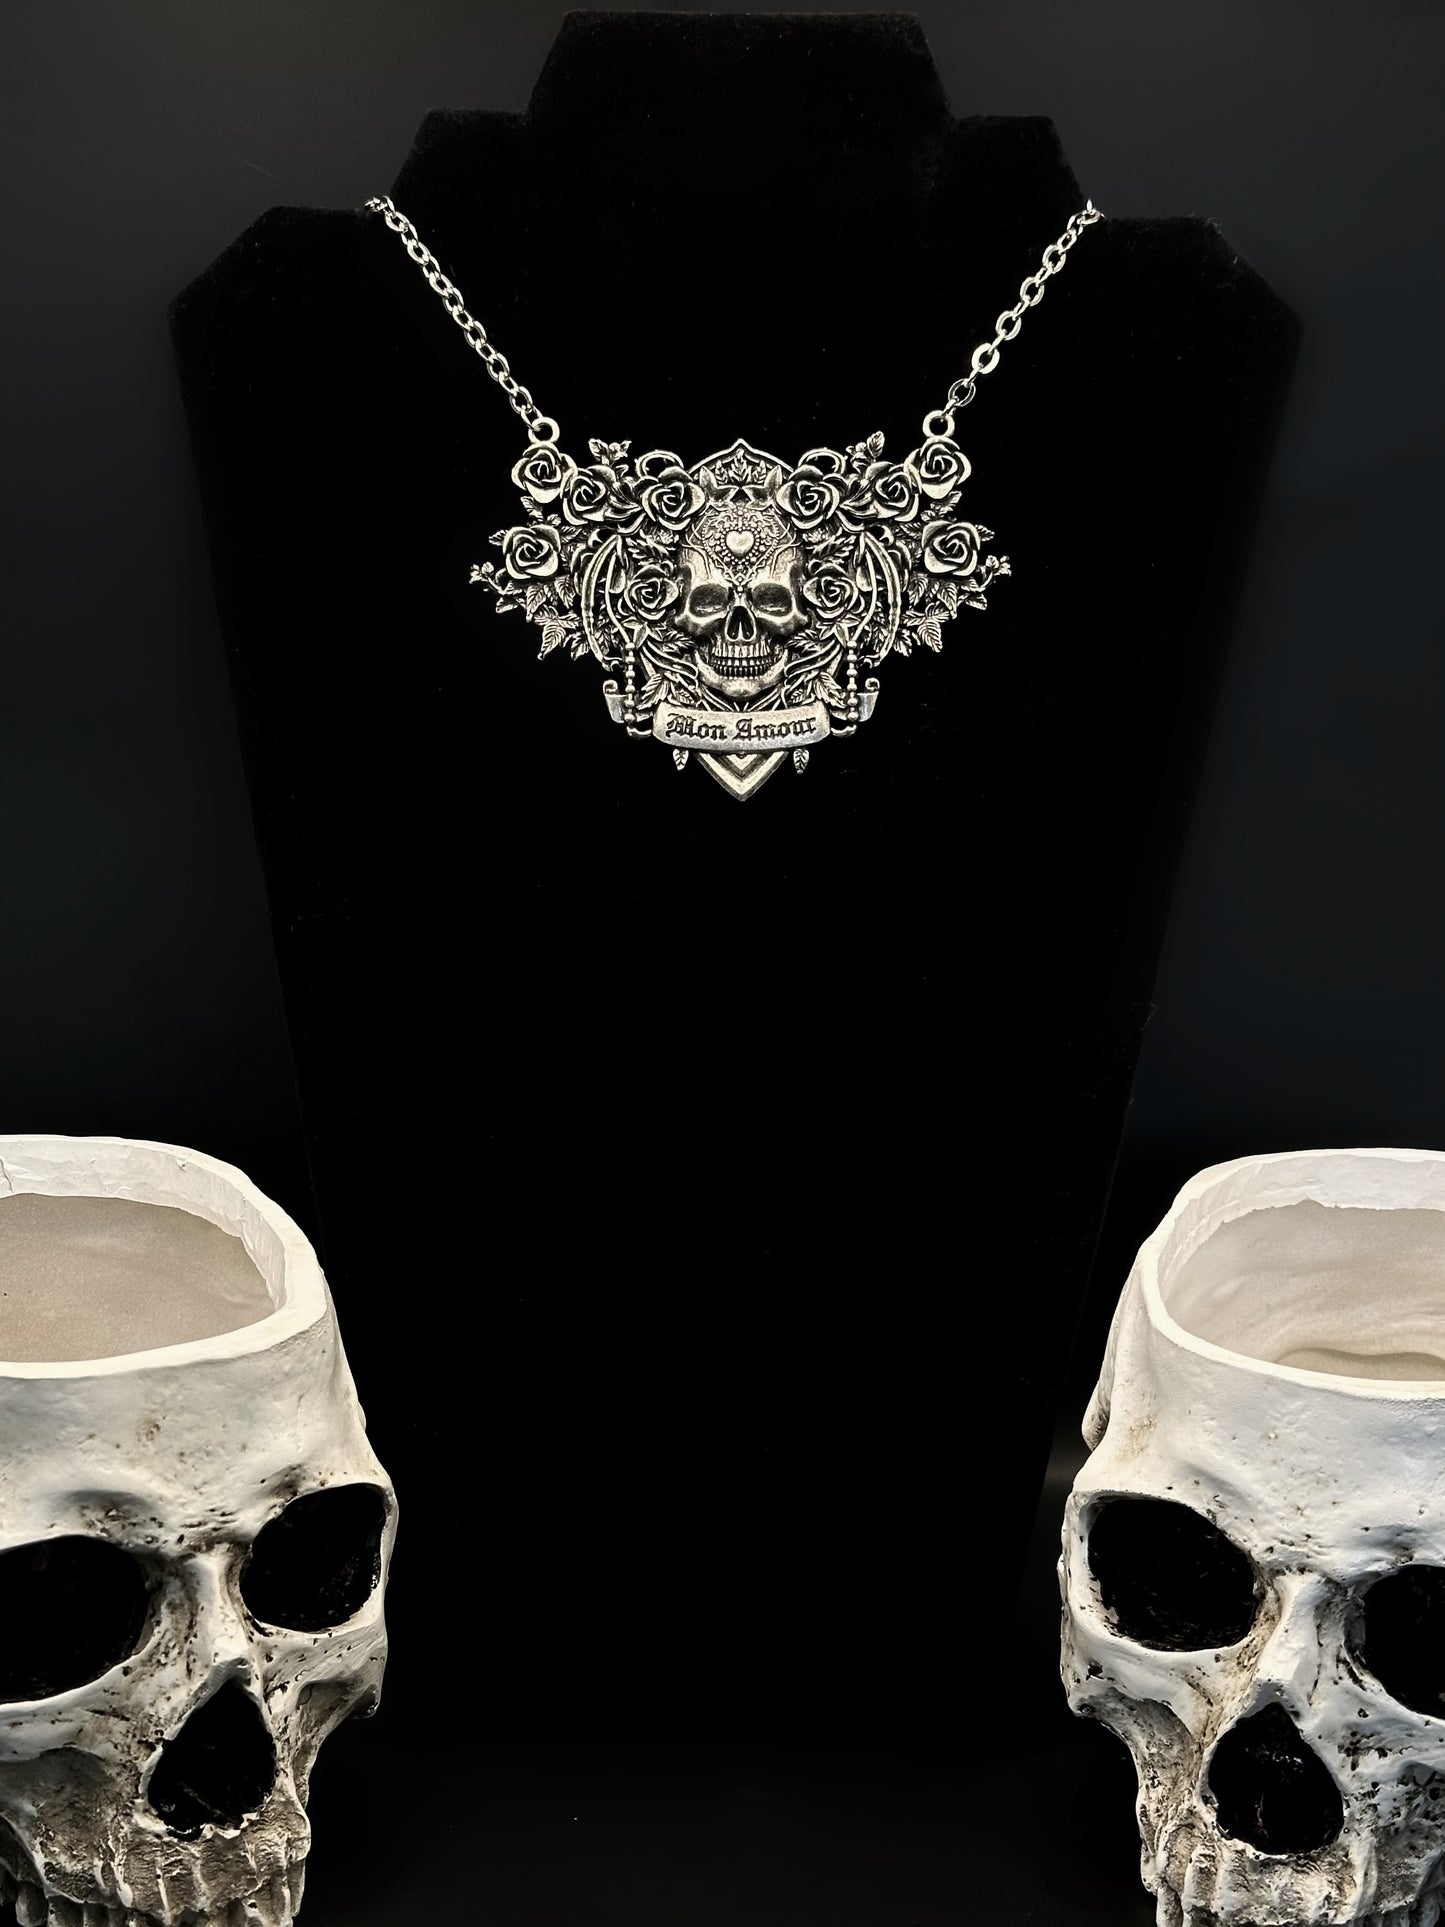 MON AMOUR - cast alloy necklace